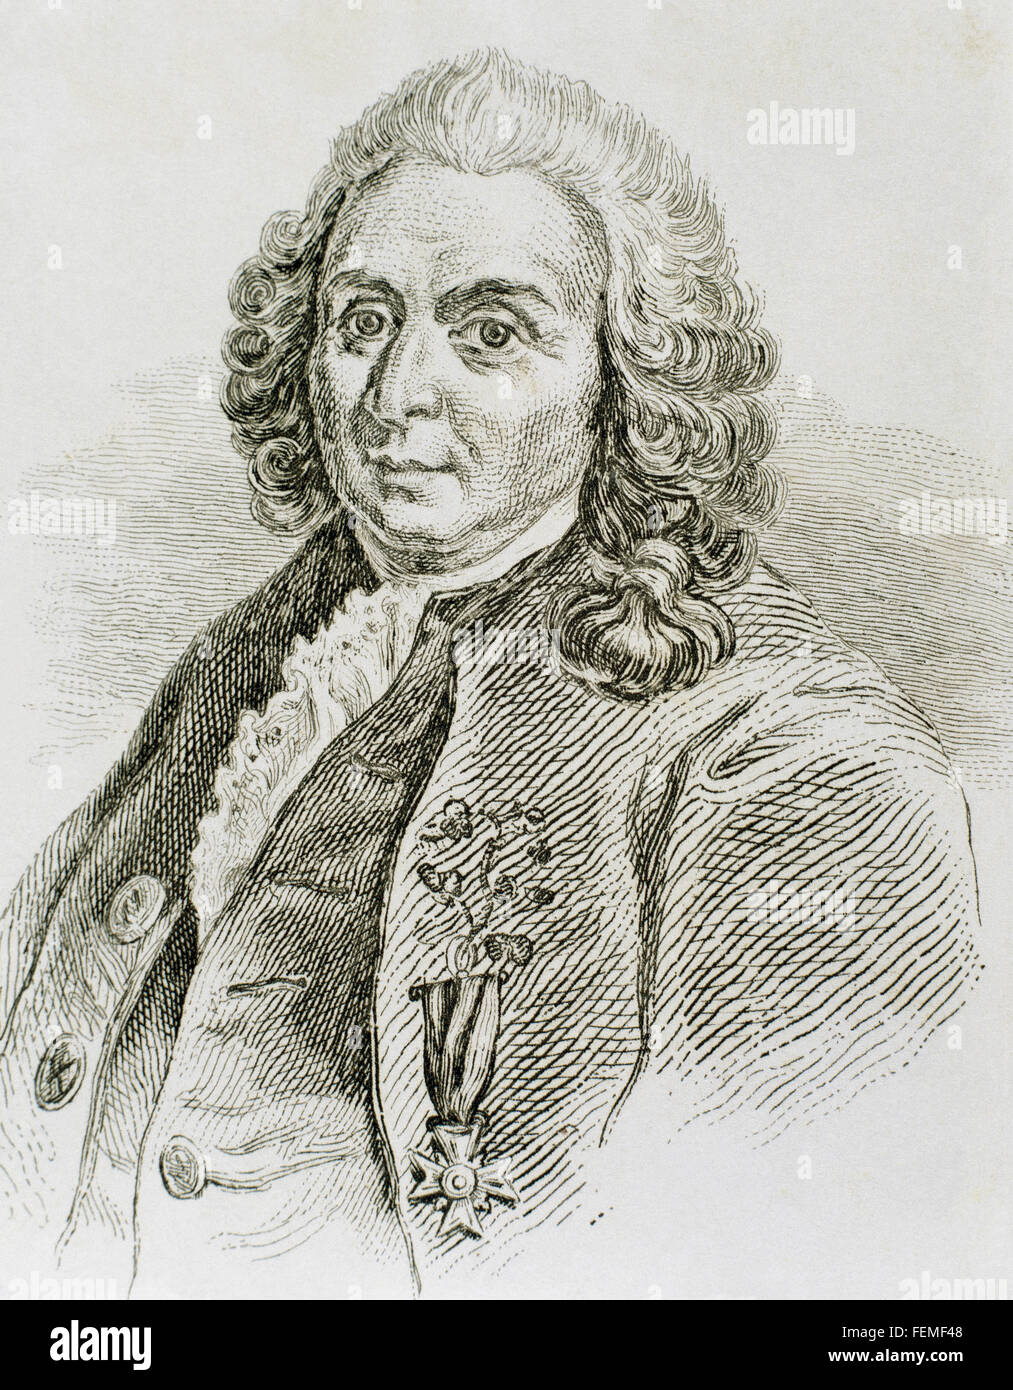 Carl von Linné (1707-1778). Schwedischer Arzt und Botaniker. Porträt. Gravur. Stockfoto